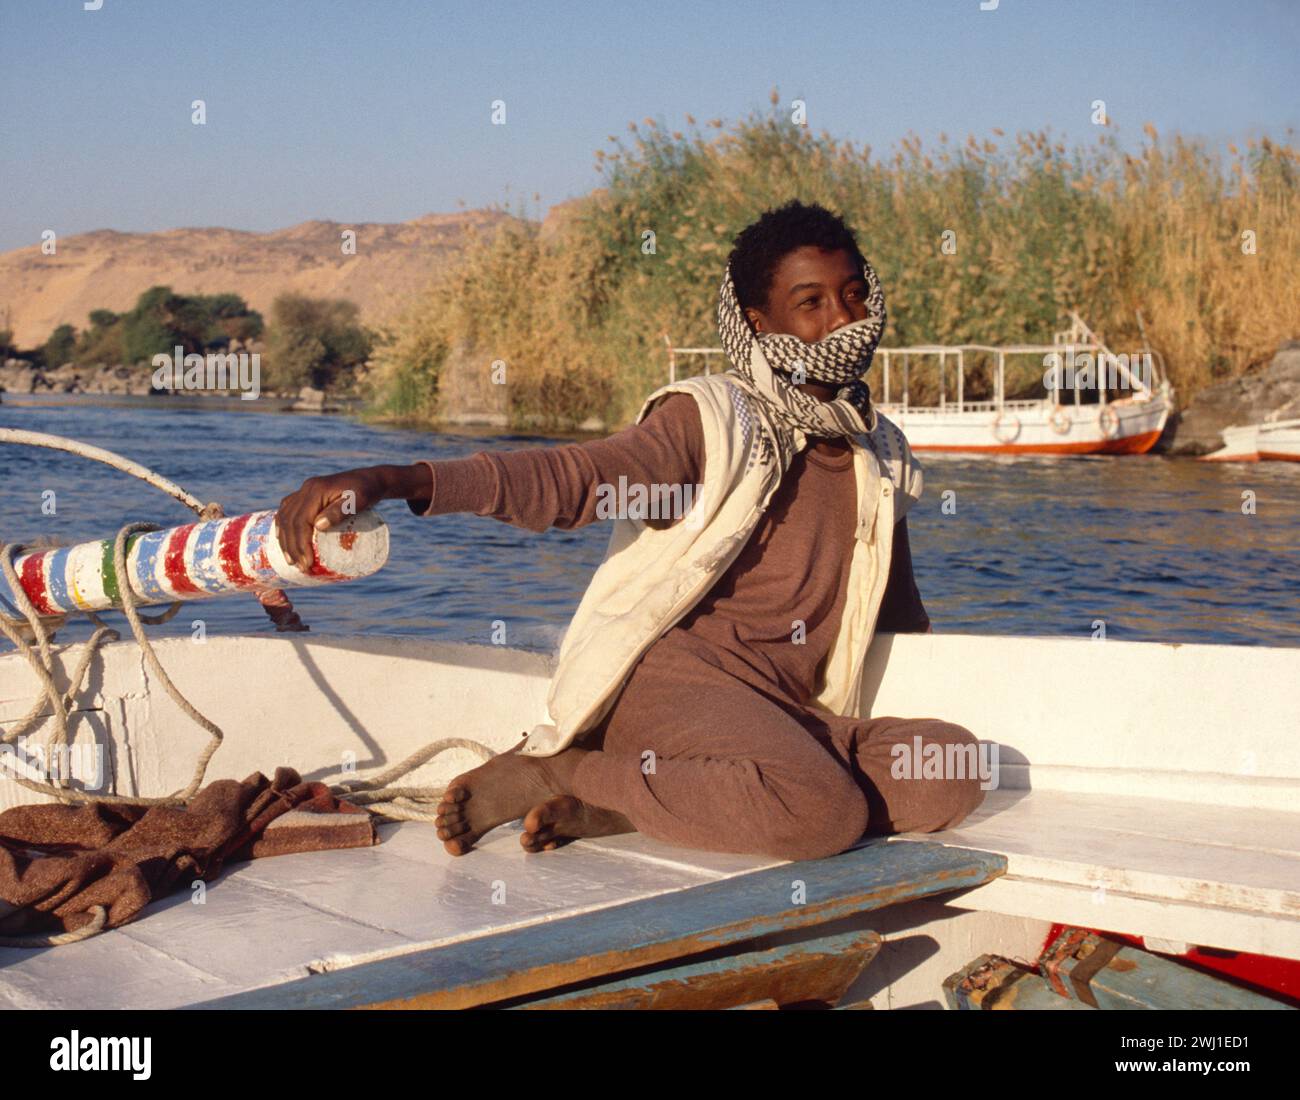 Ägypten. Assuan. Nubischer Junge auf dem Tiller des Felucca Segelbootes auf dem Nil. Stockfoto